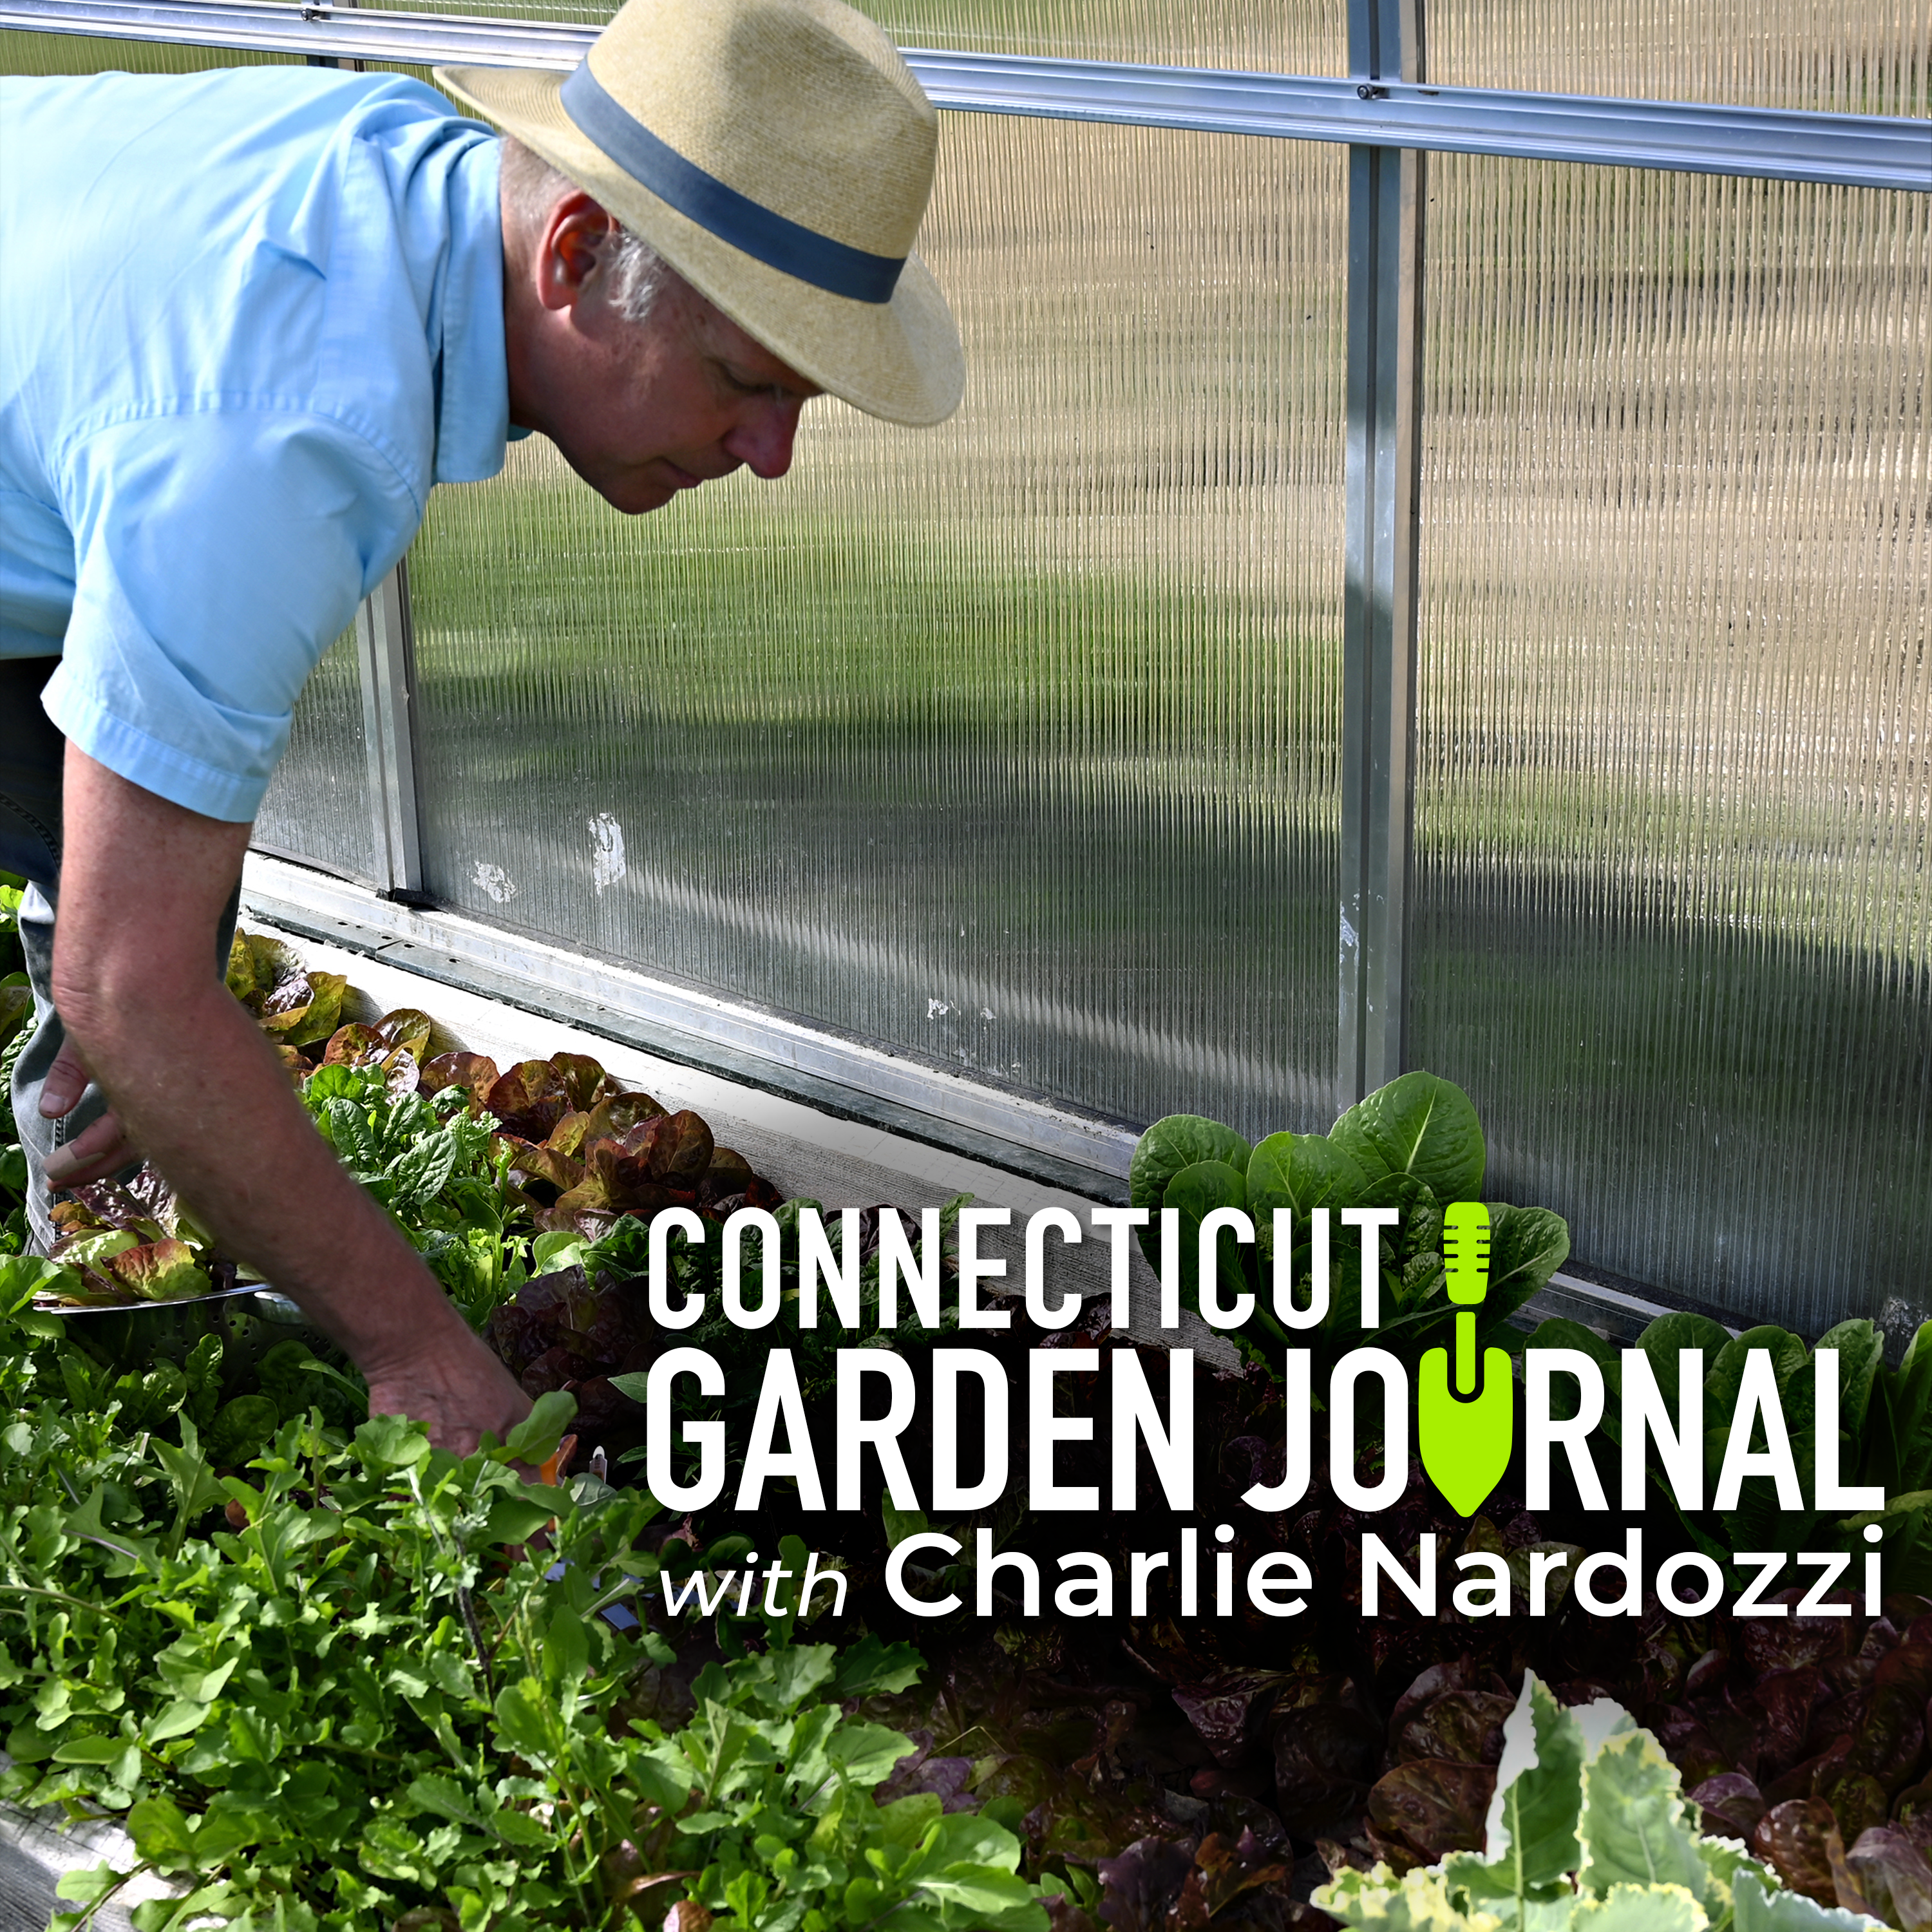 Connecticut Garden Journal: The best phlox varieties for home gardeners